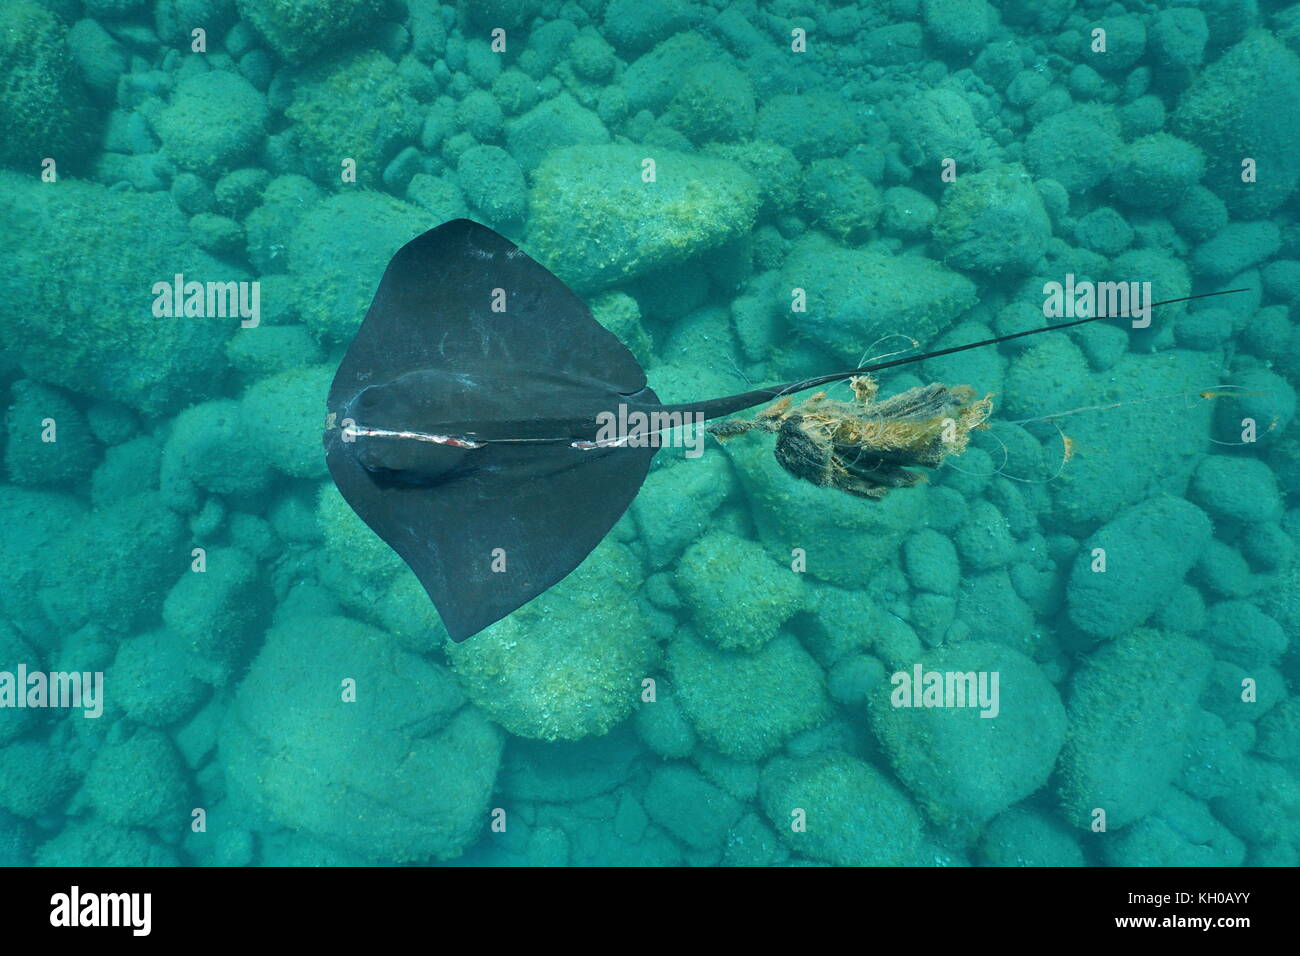 Un submarino stingray común, dasyatis pastinaca, con una lesión grave, enredado en una caña de pescar, visto desde arriba, el mar Mediterráneo, España Foto de stock